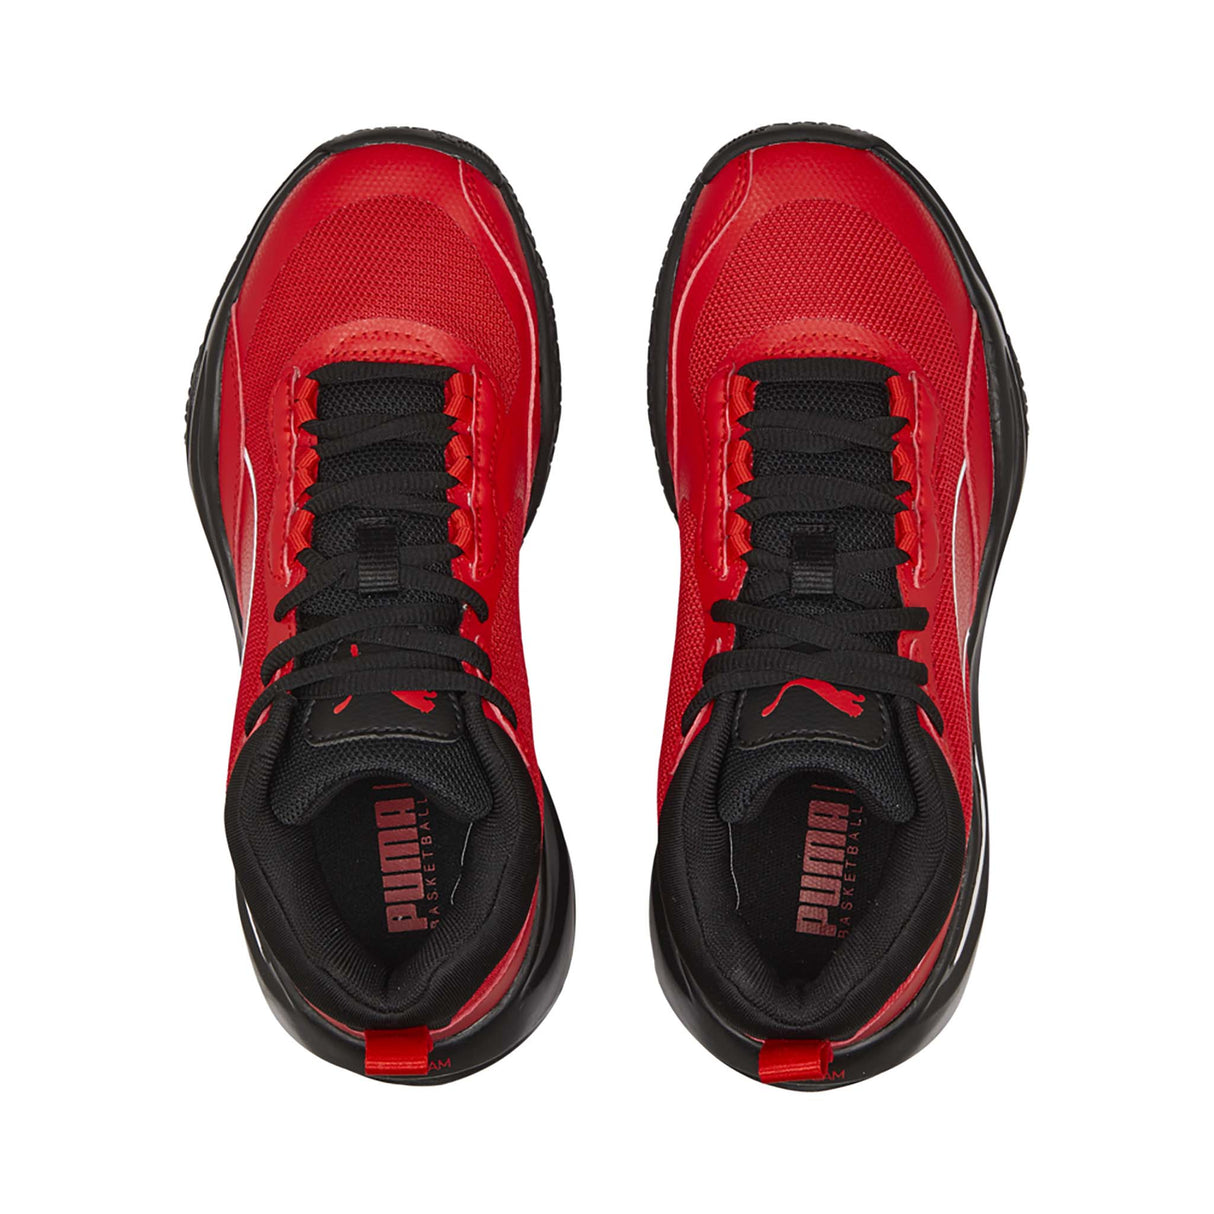 Puma Playmaker Pro chaussures de basketball enfant empeigne- rouge / noir